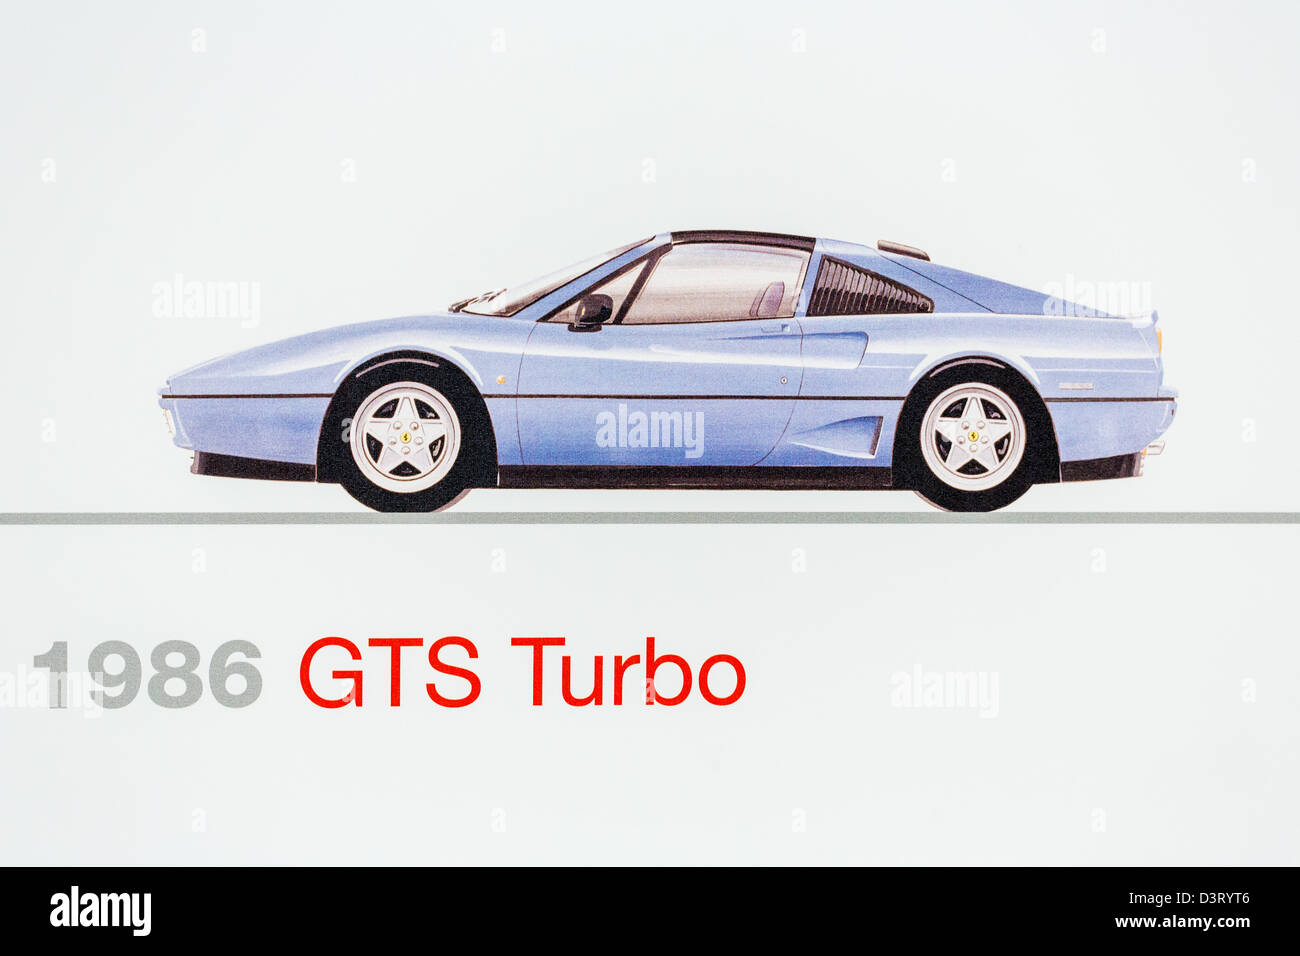 Graphic representation of a 1986 Ferrari GTS Turbo, Ferrari Museum, Maranello, Italy Stock Photo